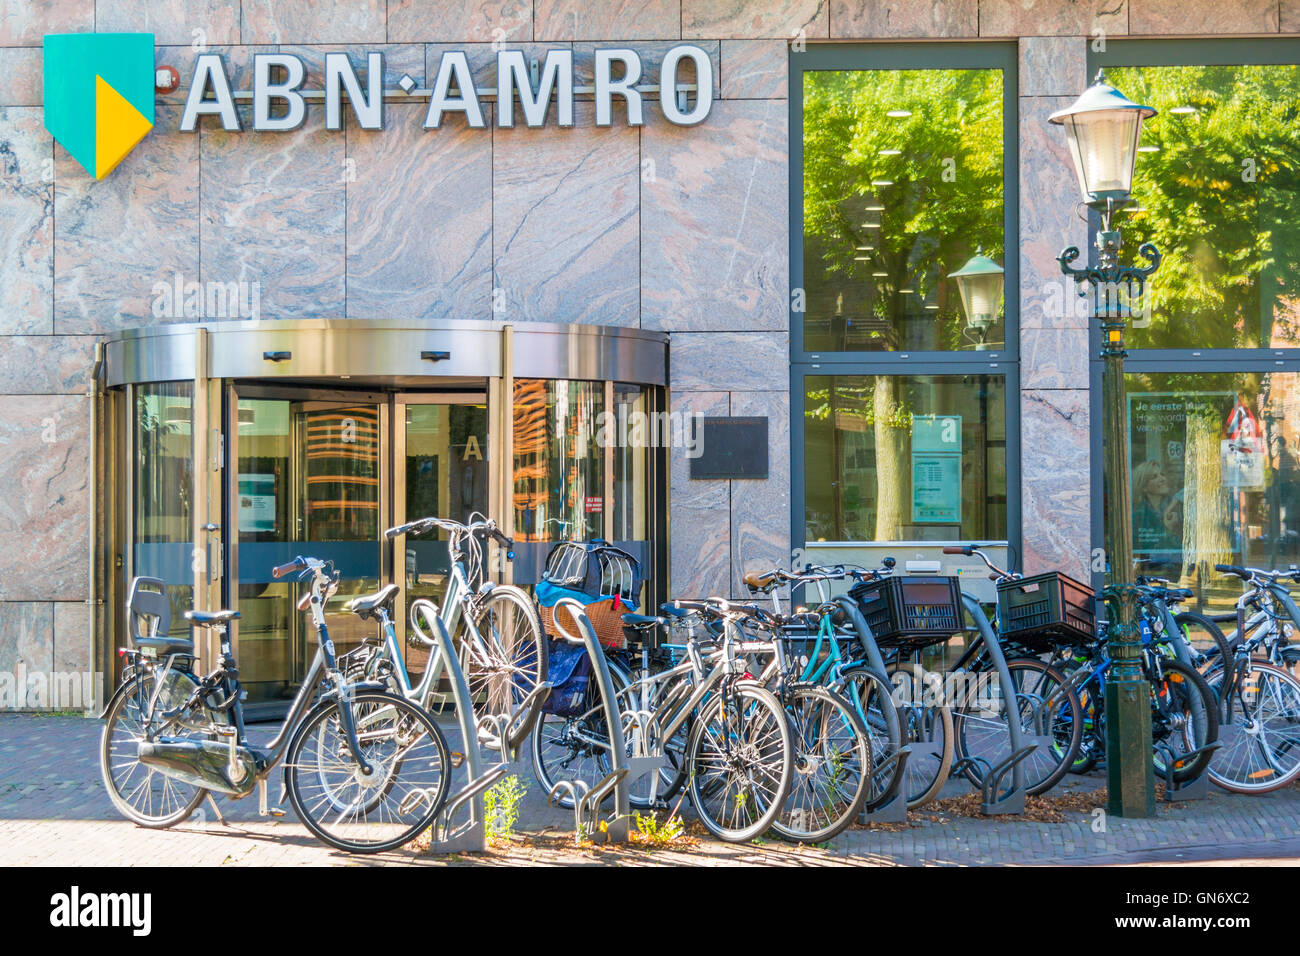 ABNAMRO Bank Niederlassung mit abgestellten Fahrrädern in Alkmaar, Nordholland, Niederlande Stockfoto